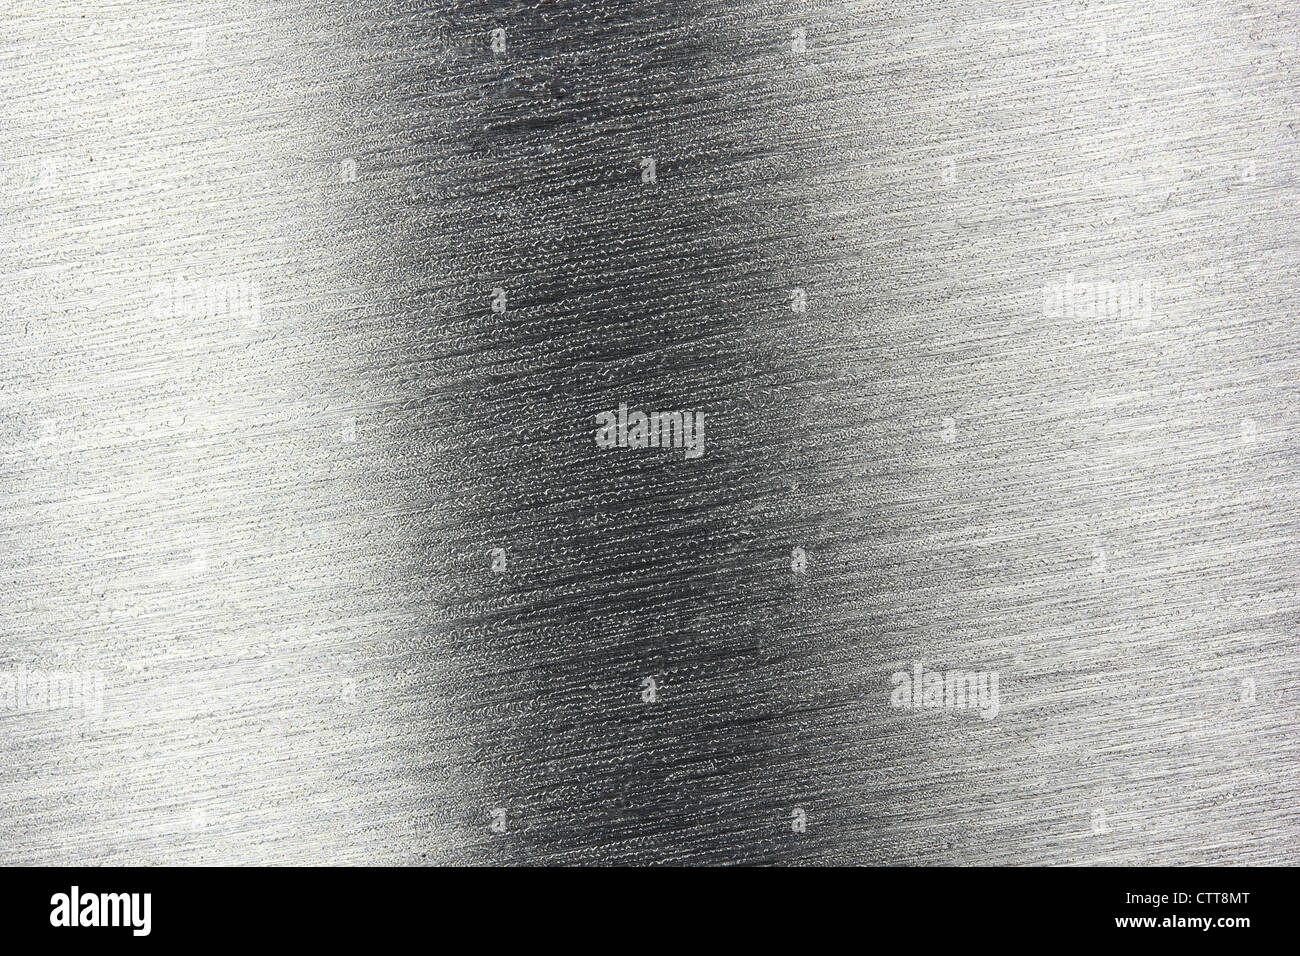 La linea color argento metallizzato, testurizzata con modello ruvida Foto Stock